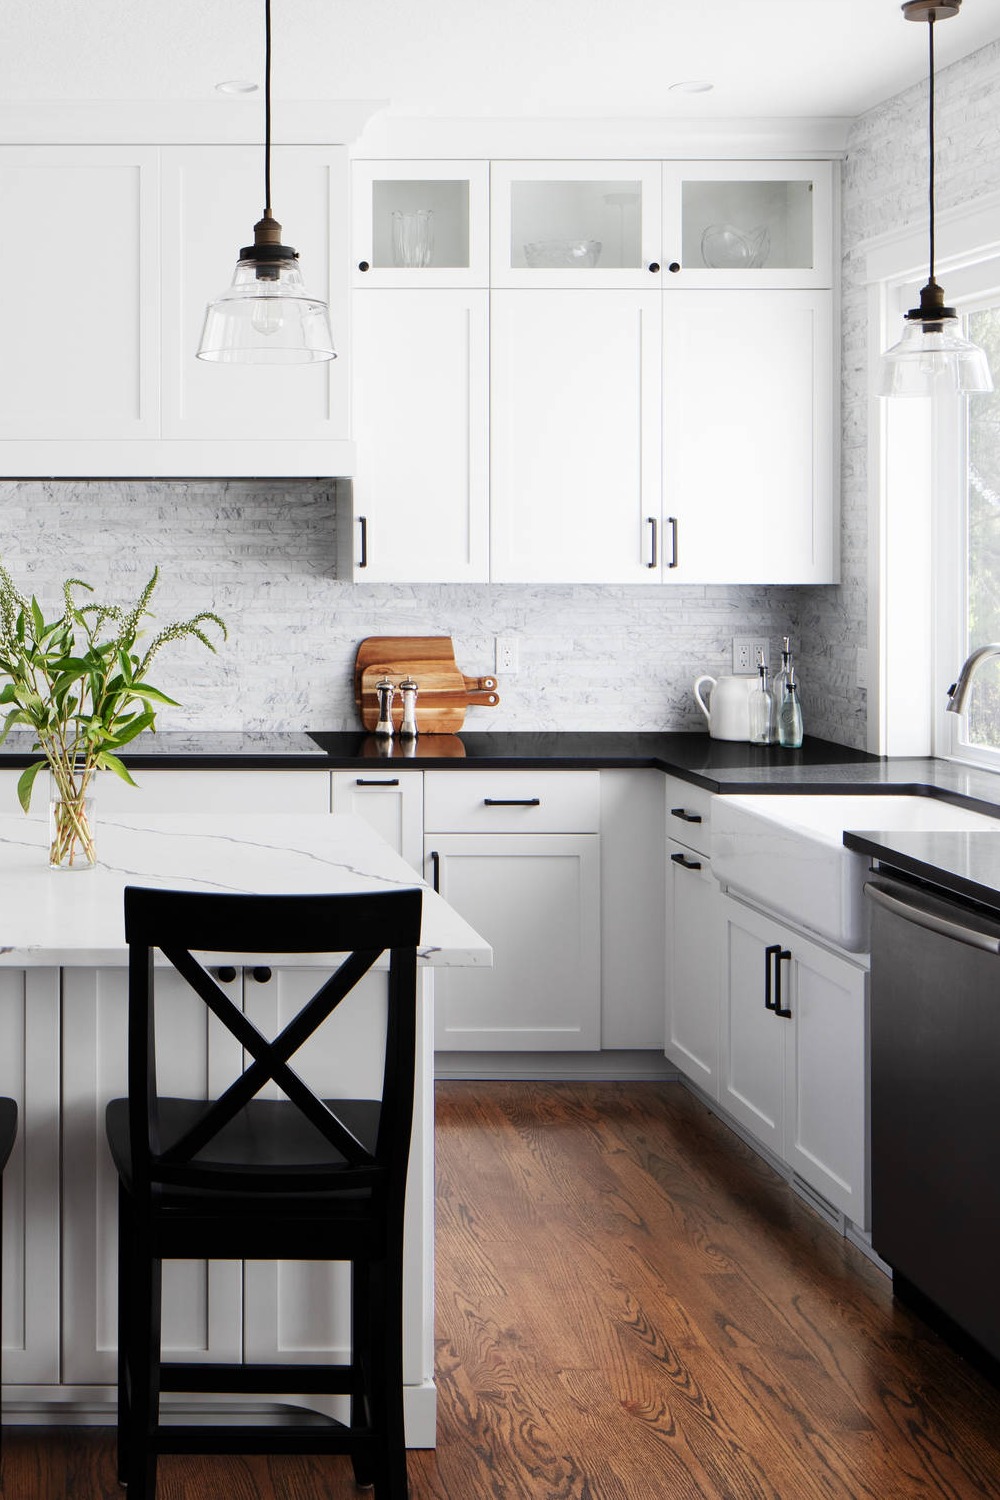 18+ Black And White Kitchen Ideas For Quartz Countertops